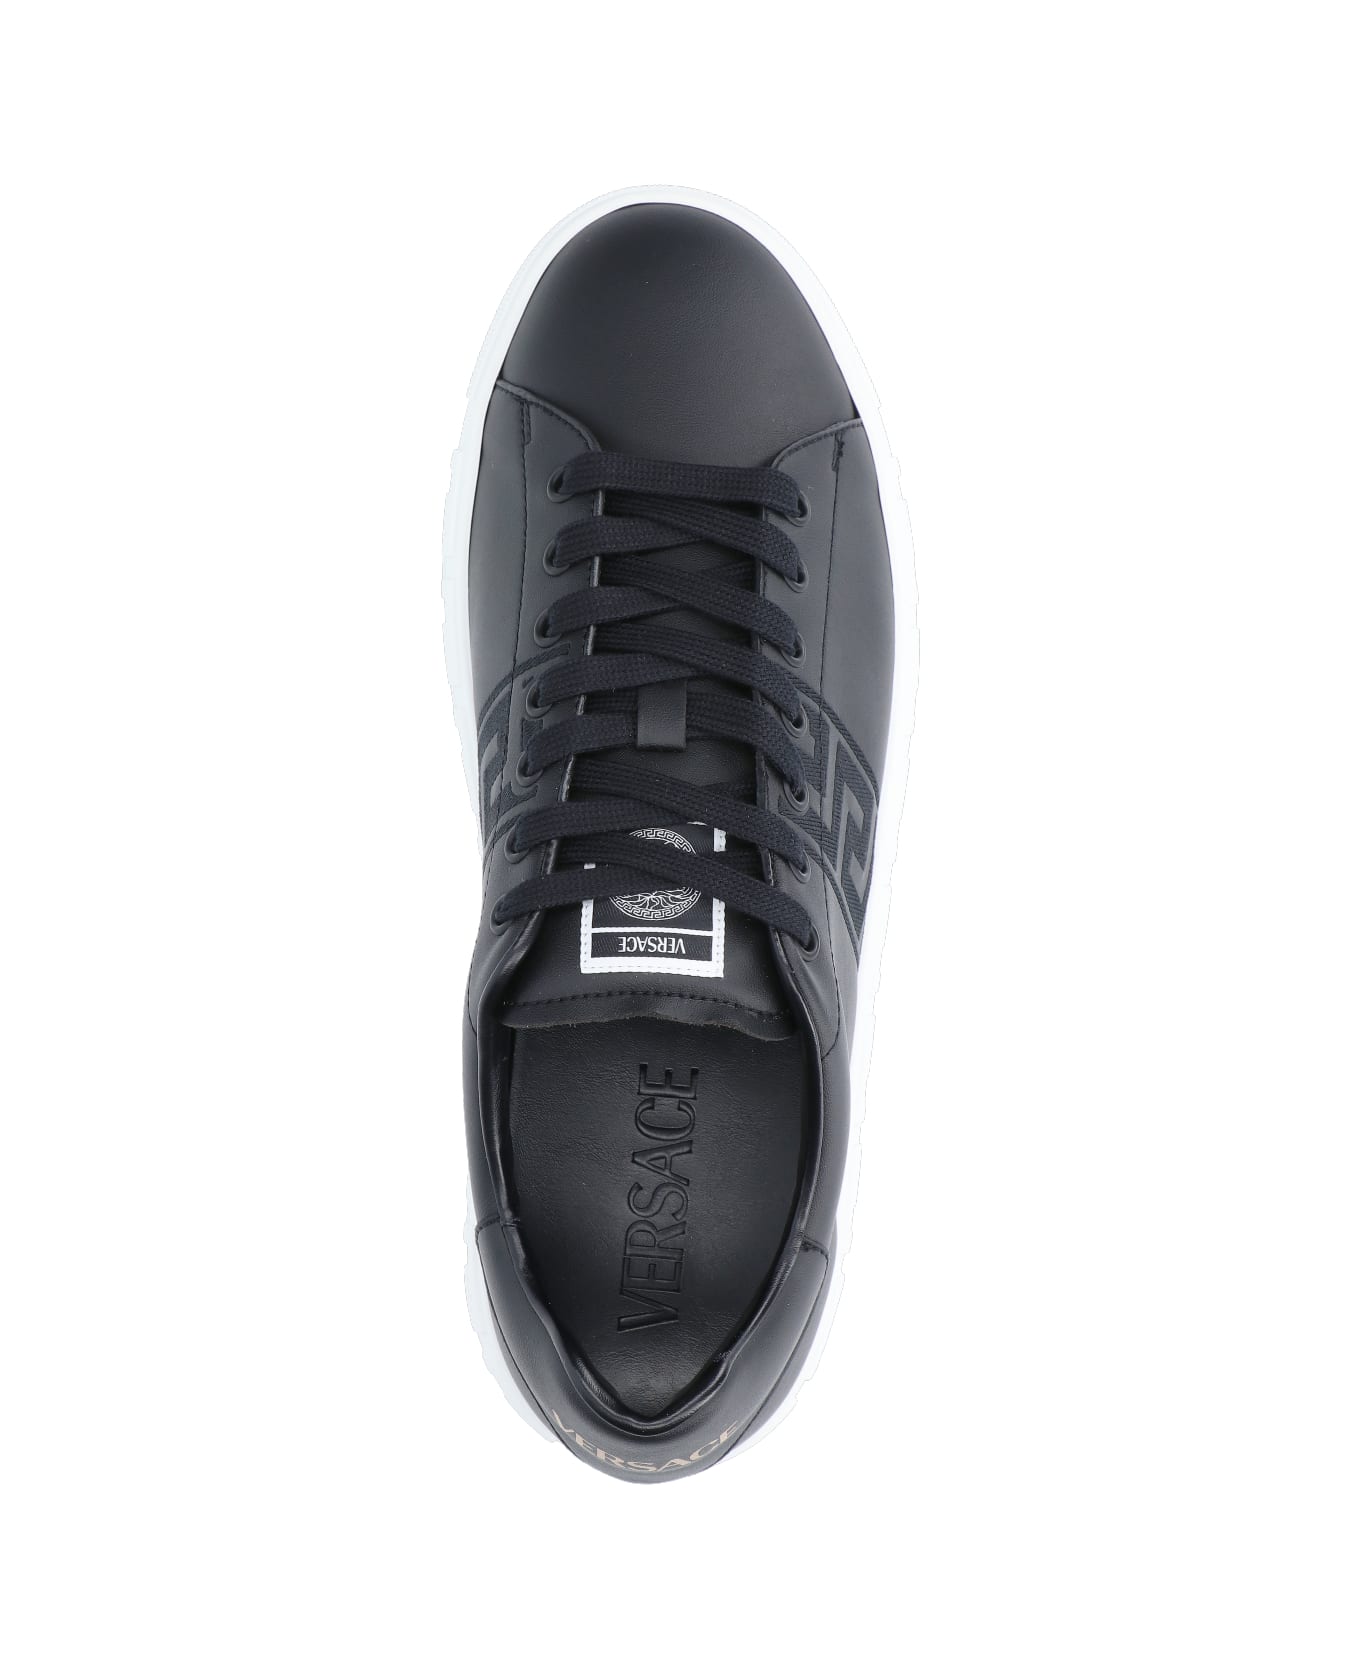 Versace Sneakers - Black